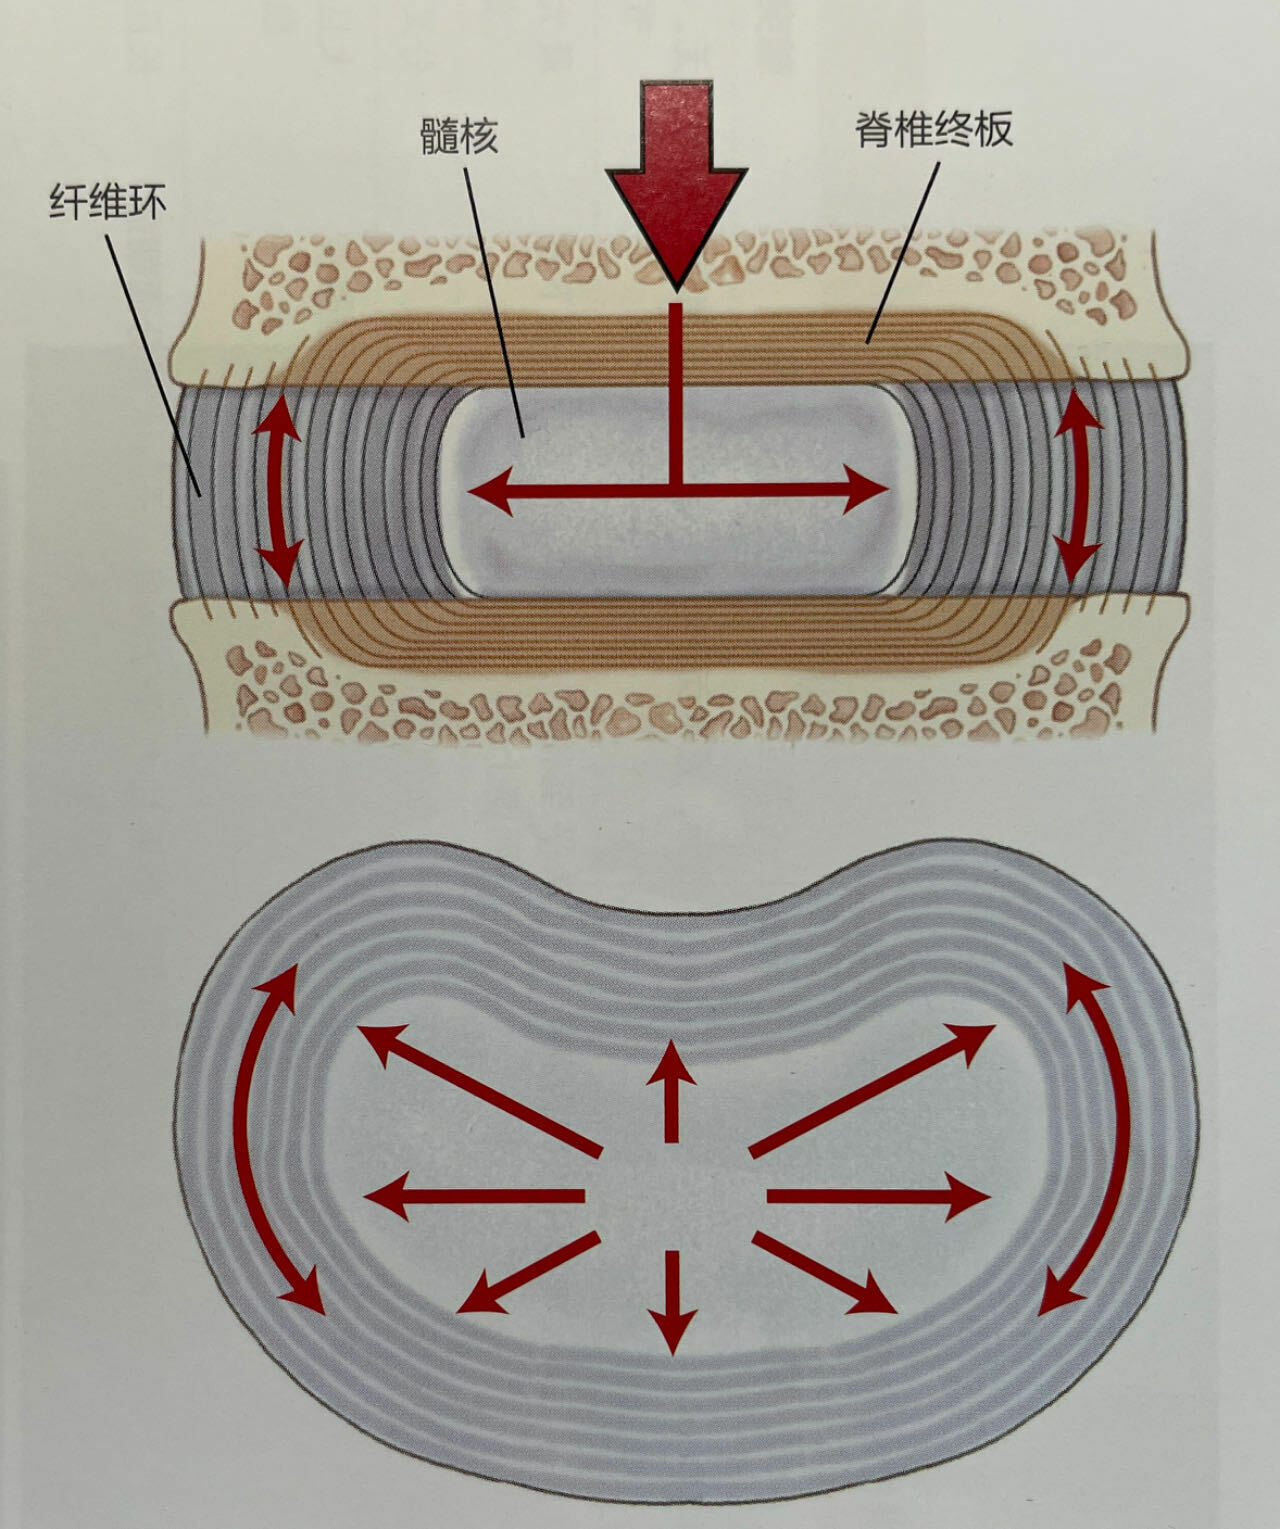 髓核中的压力传导至纤维环，形成稳定的承重结构